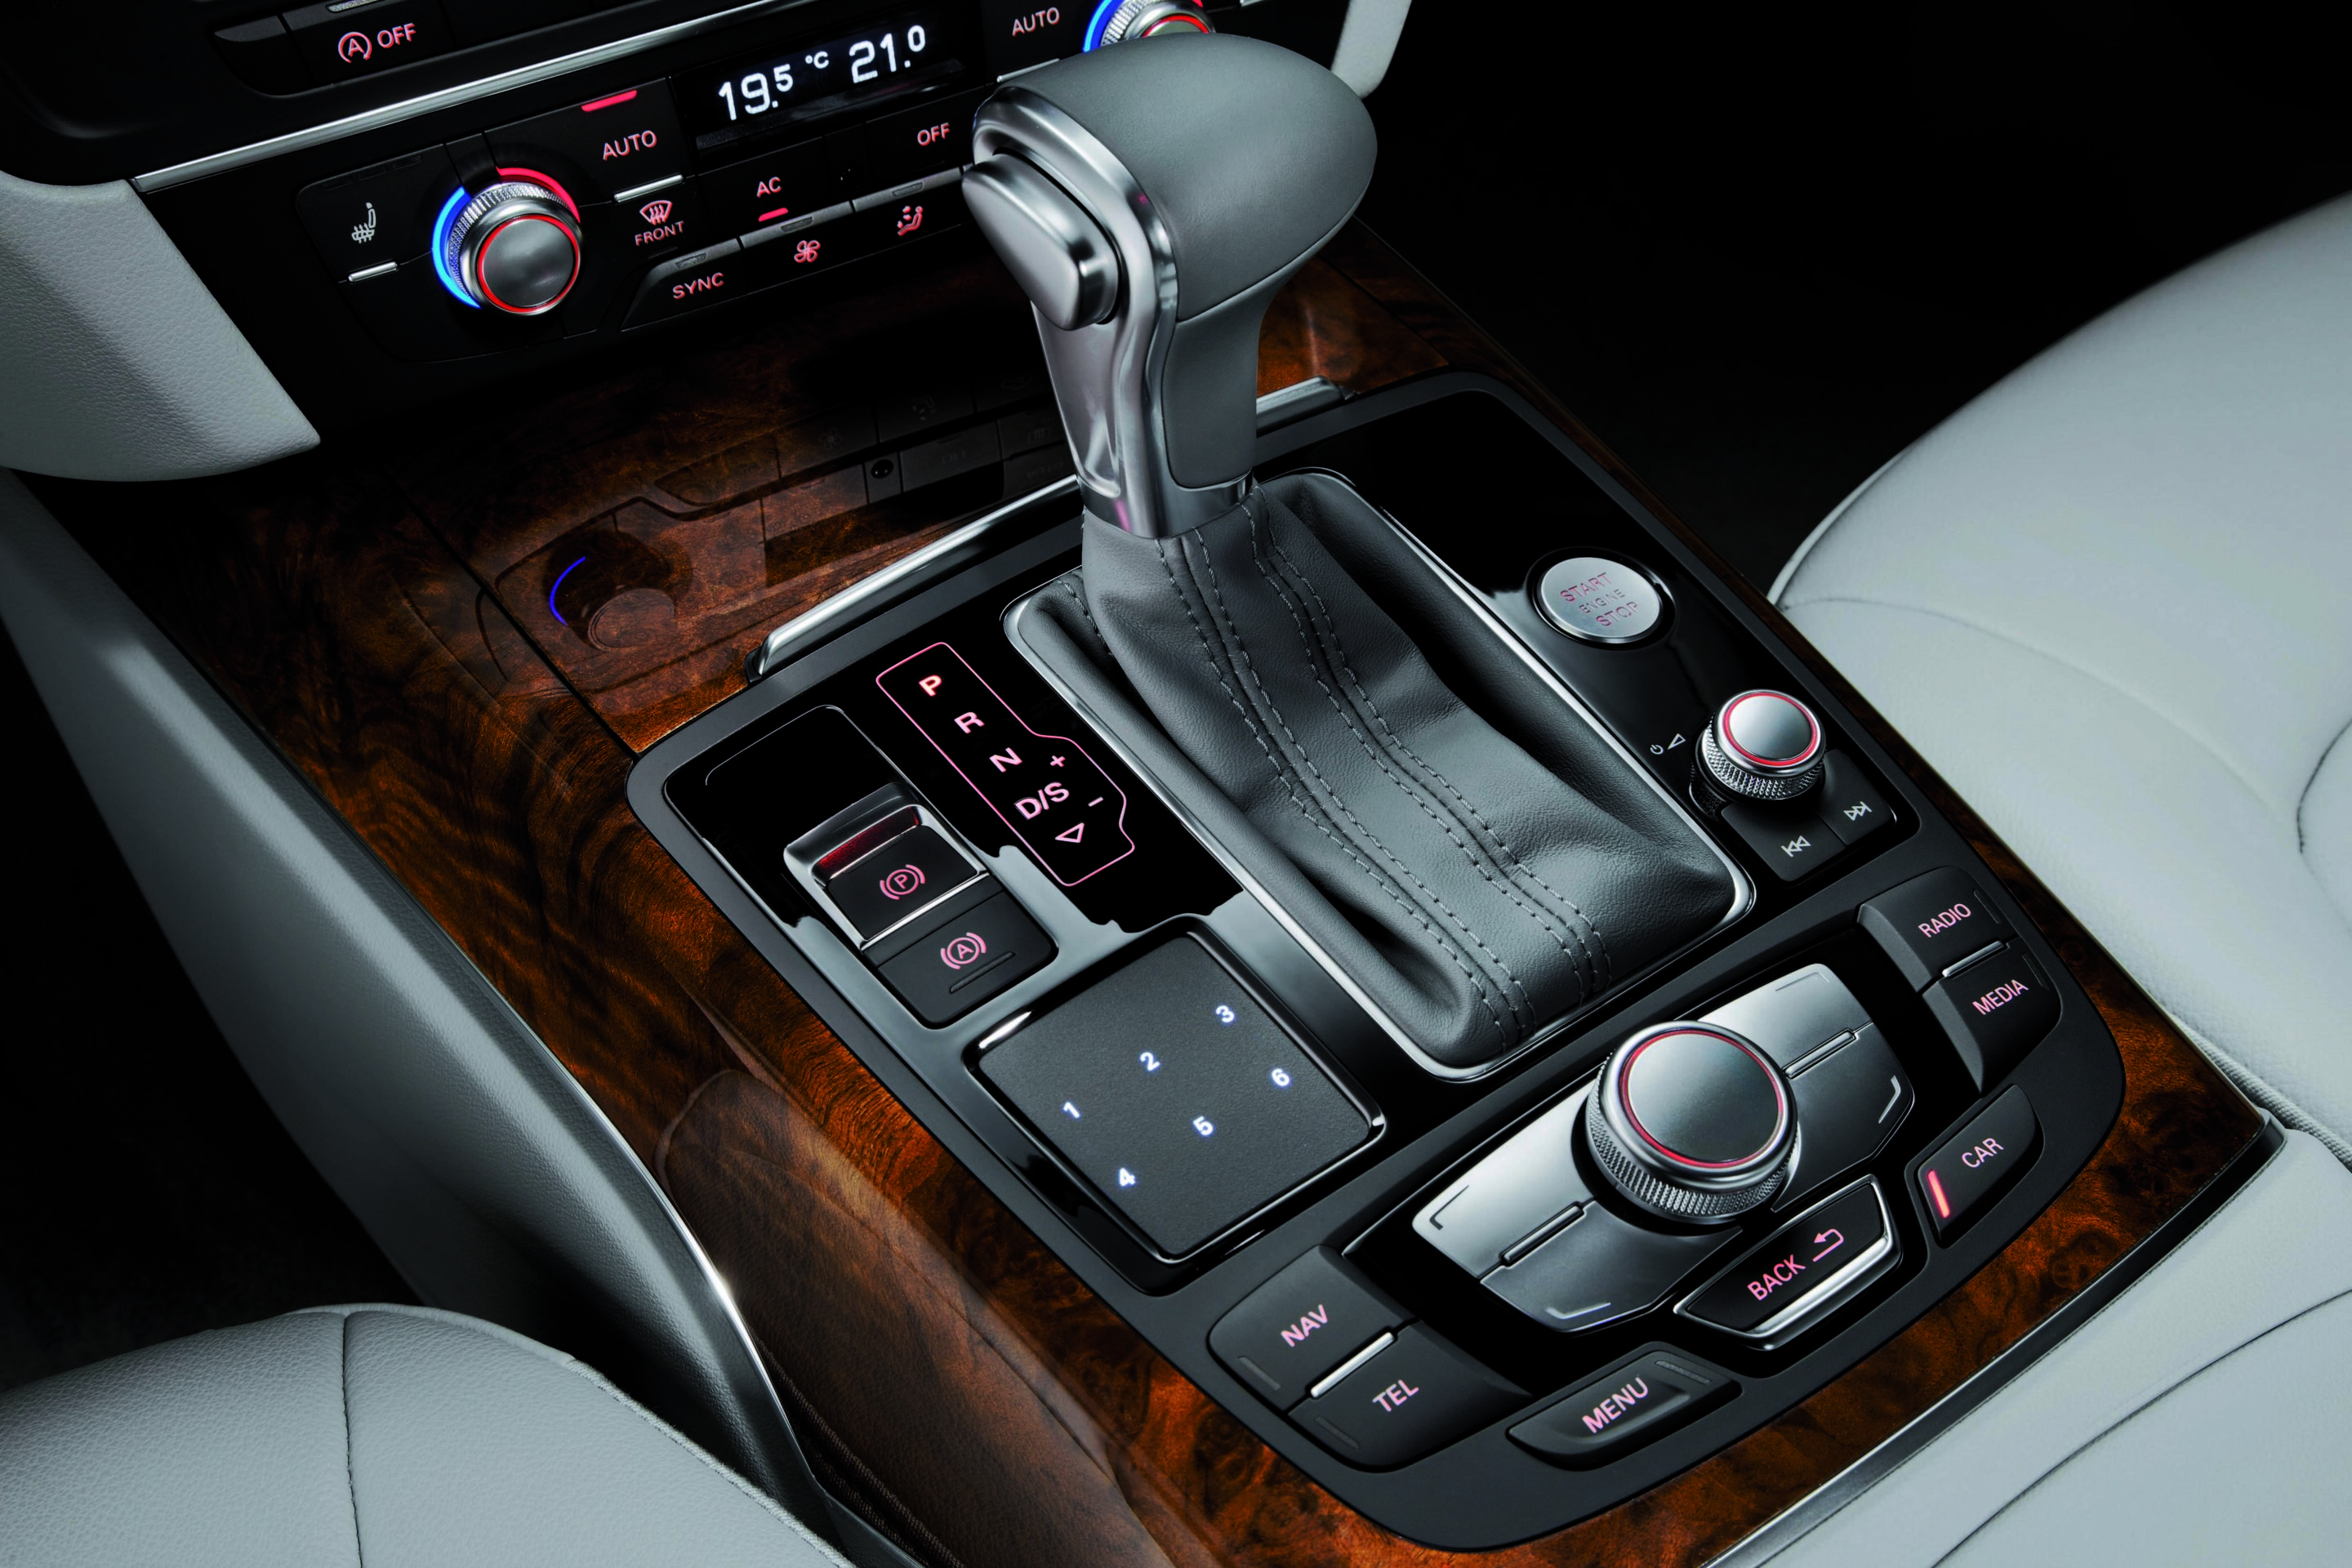 Audi A6 L e-tron concept